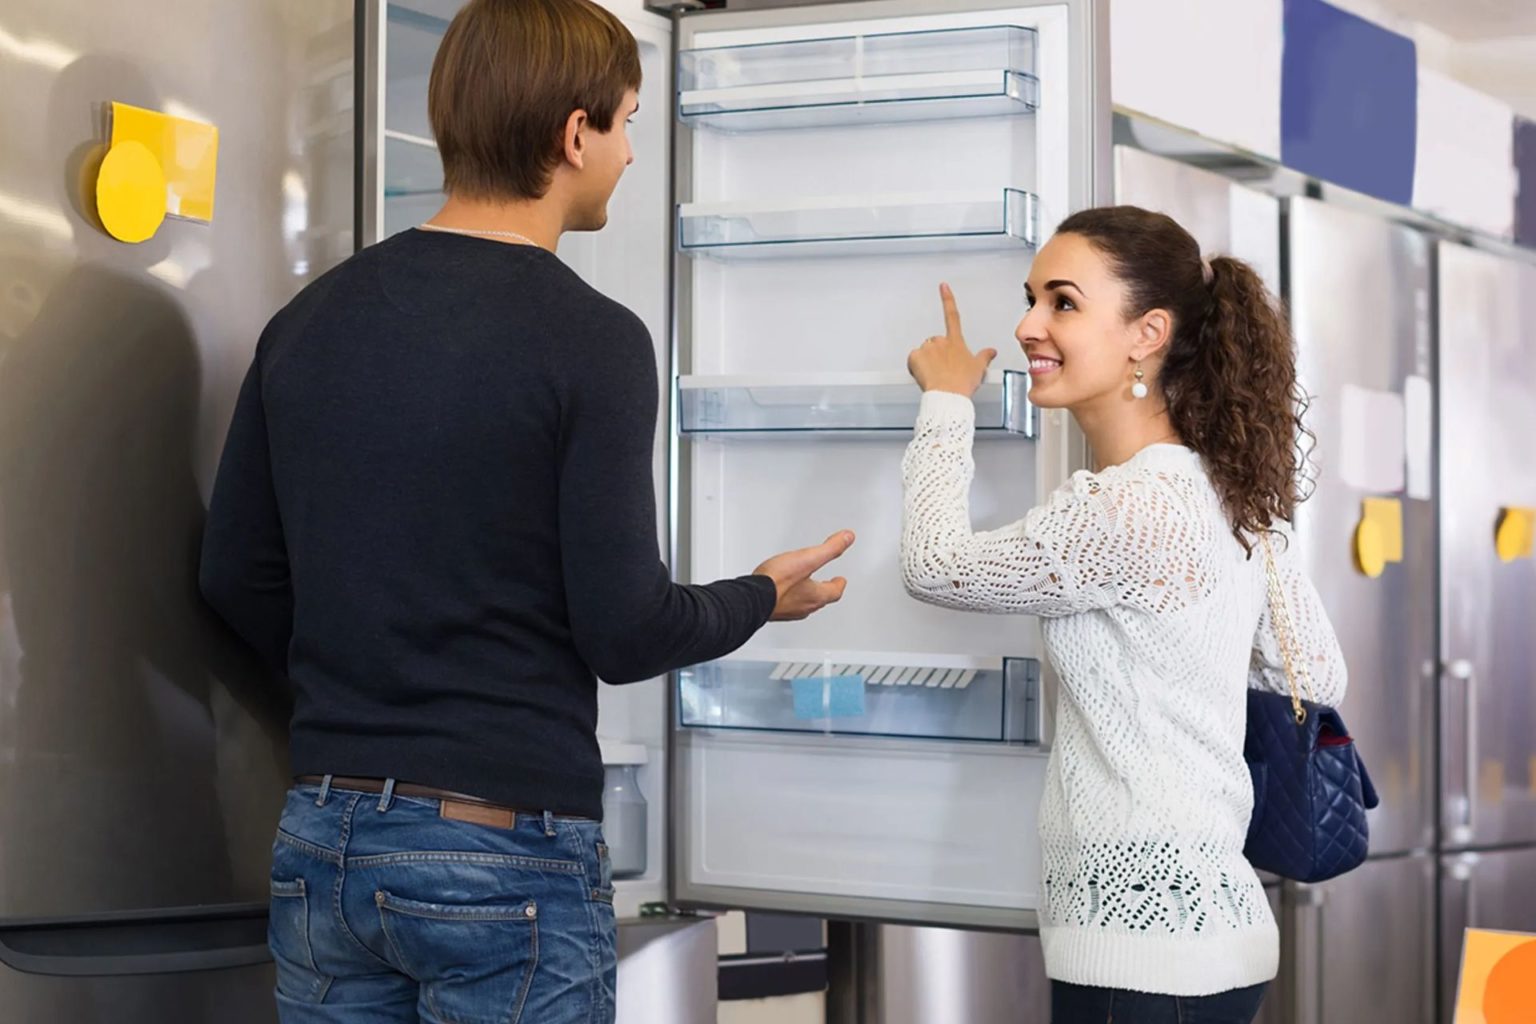 бесплатная доставка по беларуси 21 век, промокод на доставку холодильника 21 век, купить холодильник, холодильники с морозильником 21 век, как выбрать холодильник, выбрать холодильник 21 век, на что обратить внимание при покупке холодильника, холодильники гарантия, размер холодильника, место установки холодильника, встроенный холодильник, ниша для холодильника, климатический класс холодильника, Тип управления холодильника, Уровень шума холодильника, количество компрессоров в холодильнике, Тип разморозки холодильника, Система No Frost, Капельная система, Энергоэффективность холодильника, Где купить холодильник, онлайн-гипермаркет 21vek,  каталоге 21век, 21vek.by, бесплатная доставка по Беларуси